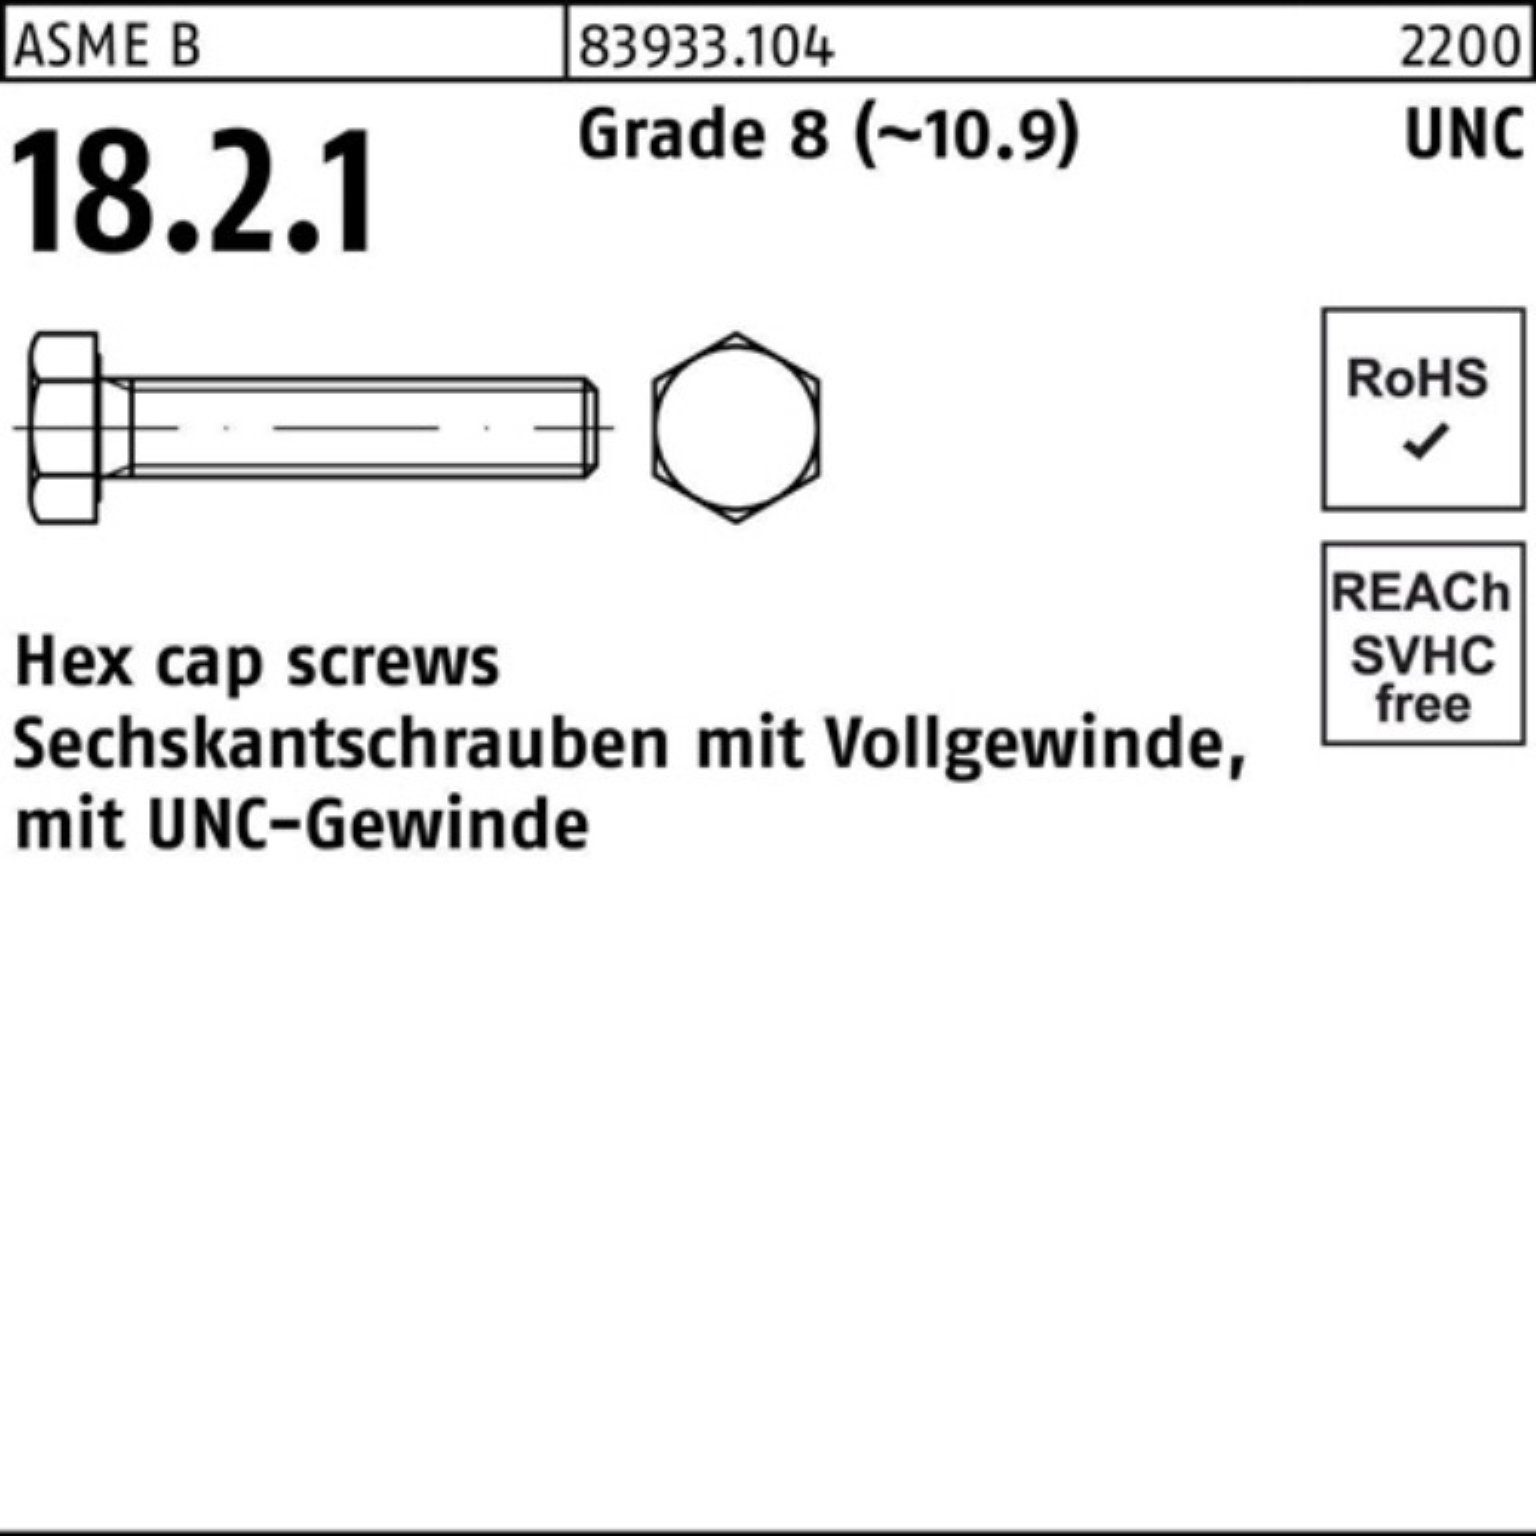 Reyher Sechskantschraube 100er Pack Sechskantschraube R 83933 UNC-Gewinde VG 5/16x 1/2 Grade 8